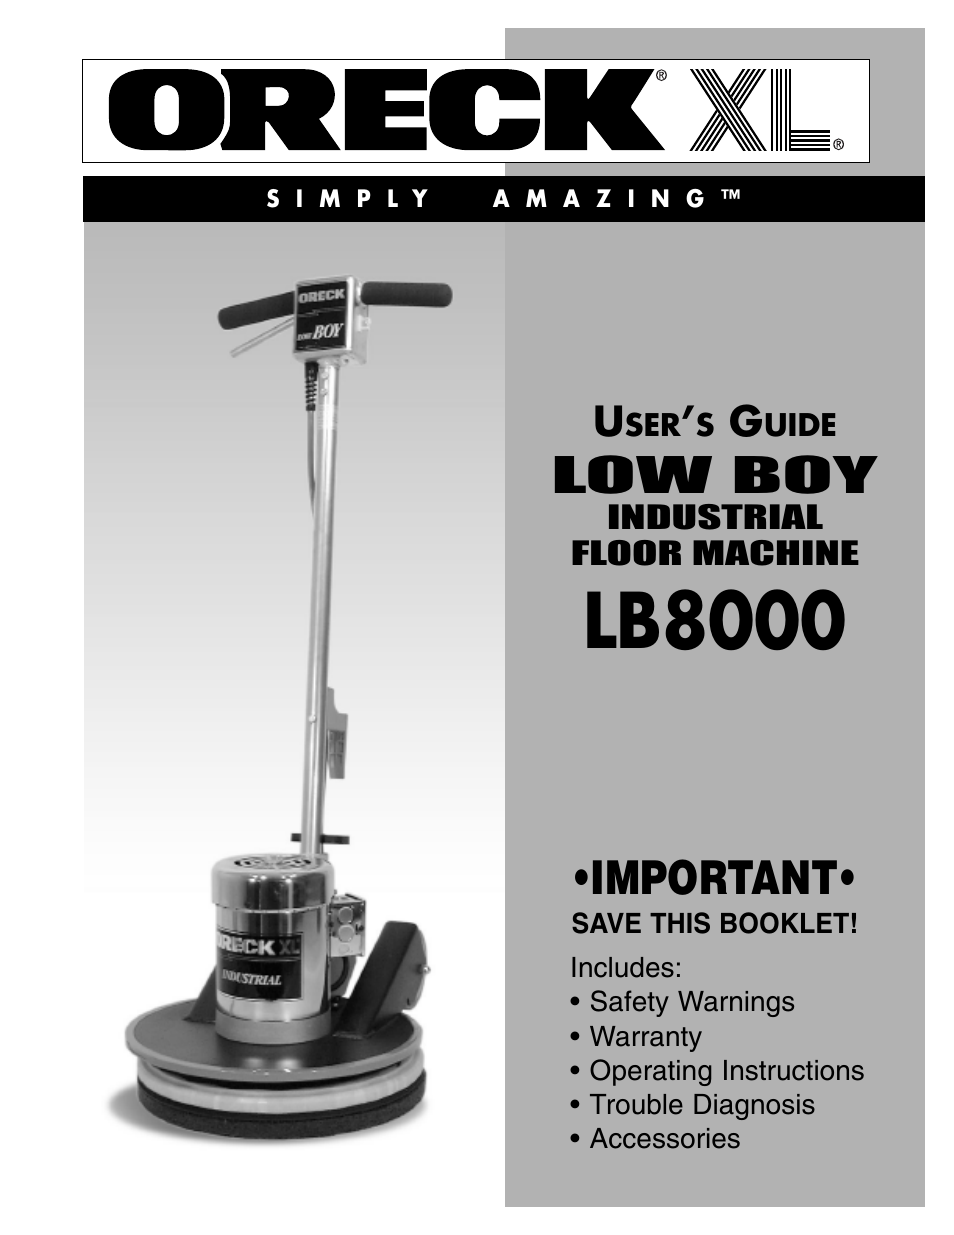 Low Boy Industrial Floor Machine LB8000